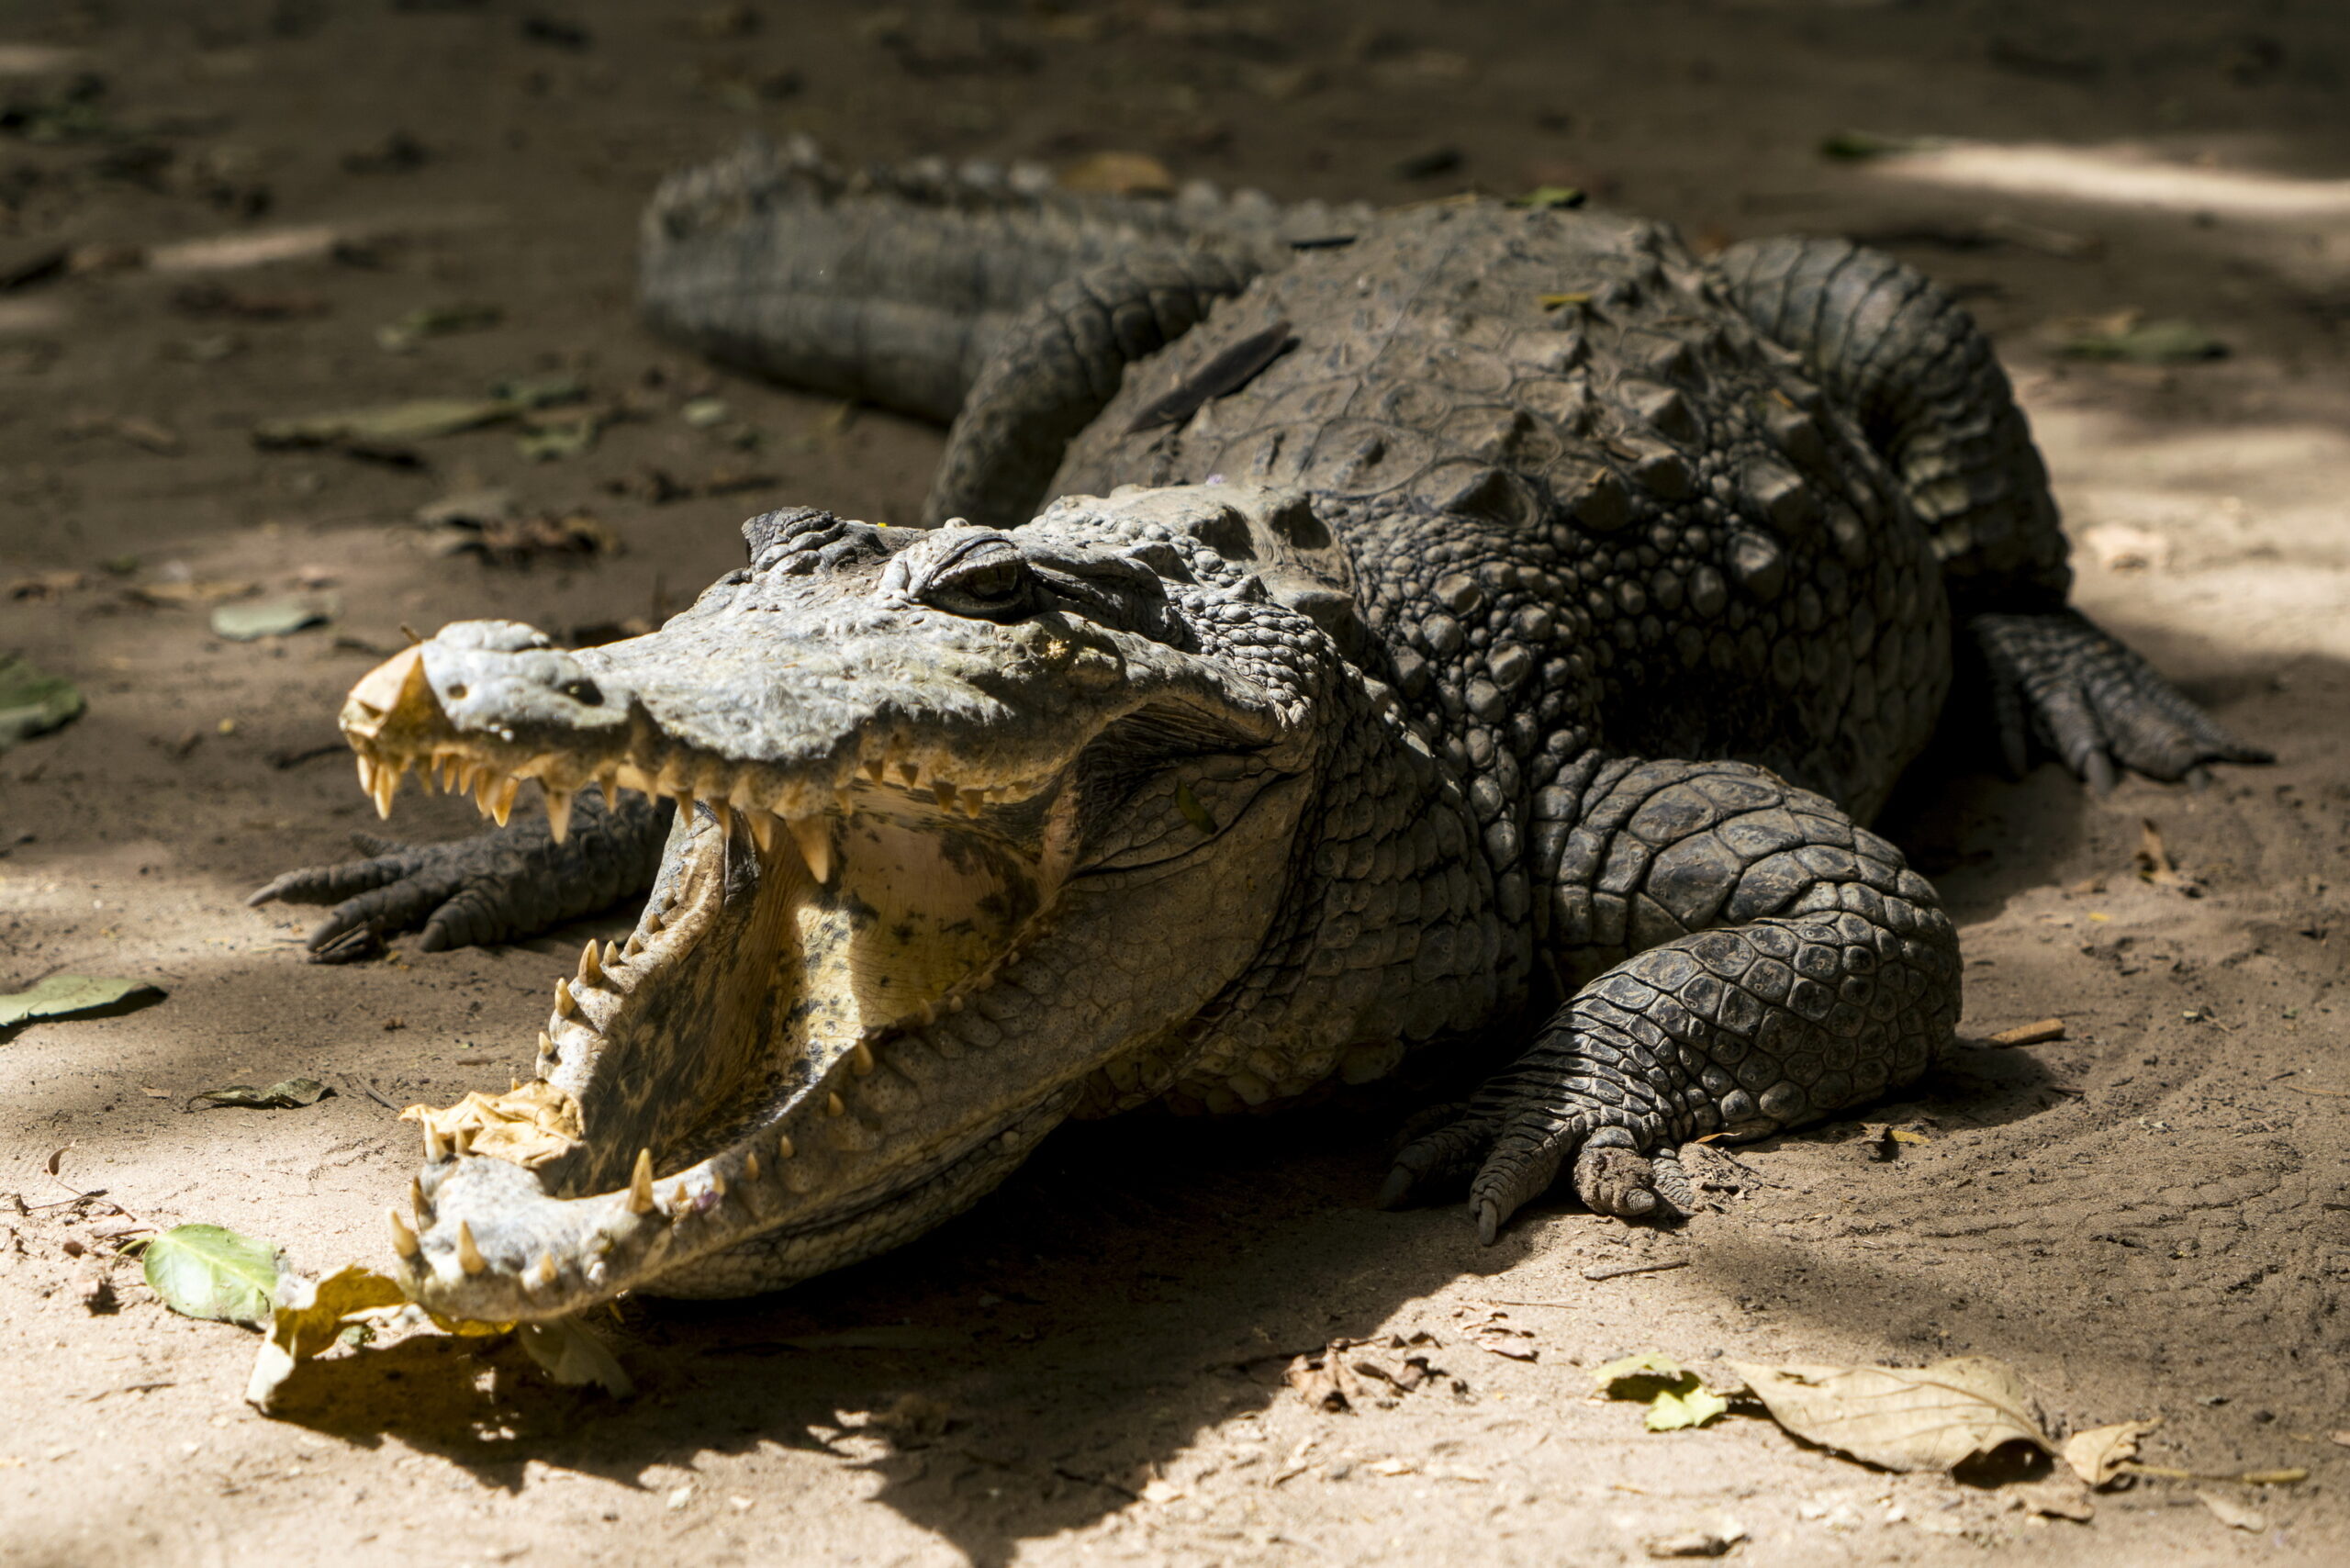 Impactante video: Encuentran a un inmenso caimán cerca de un charco de sangre